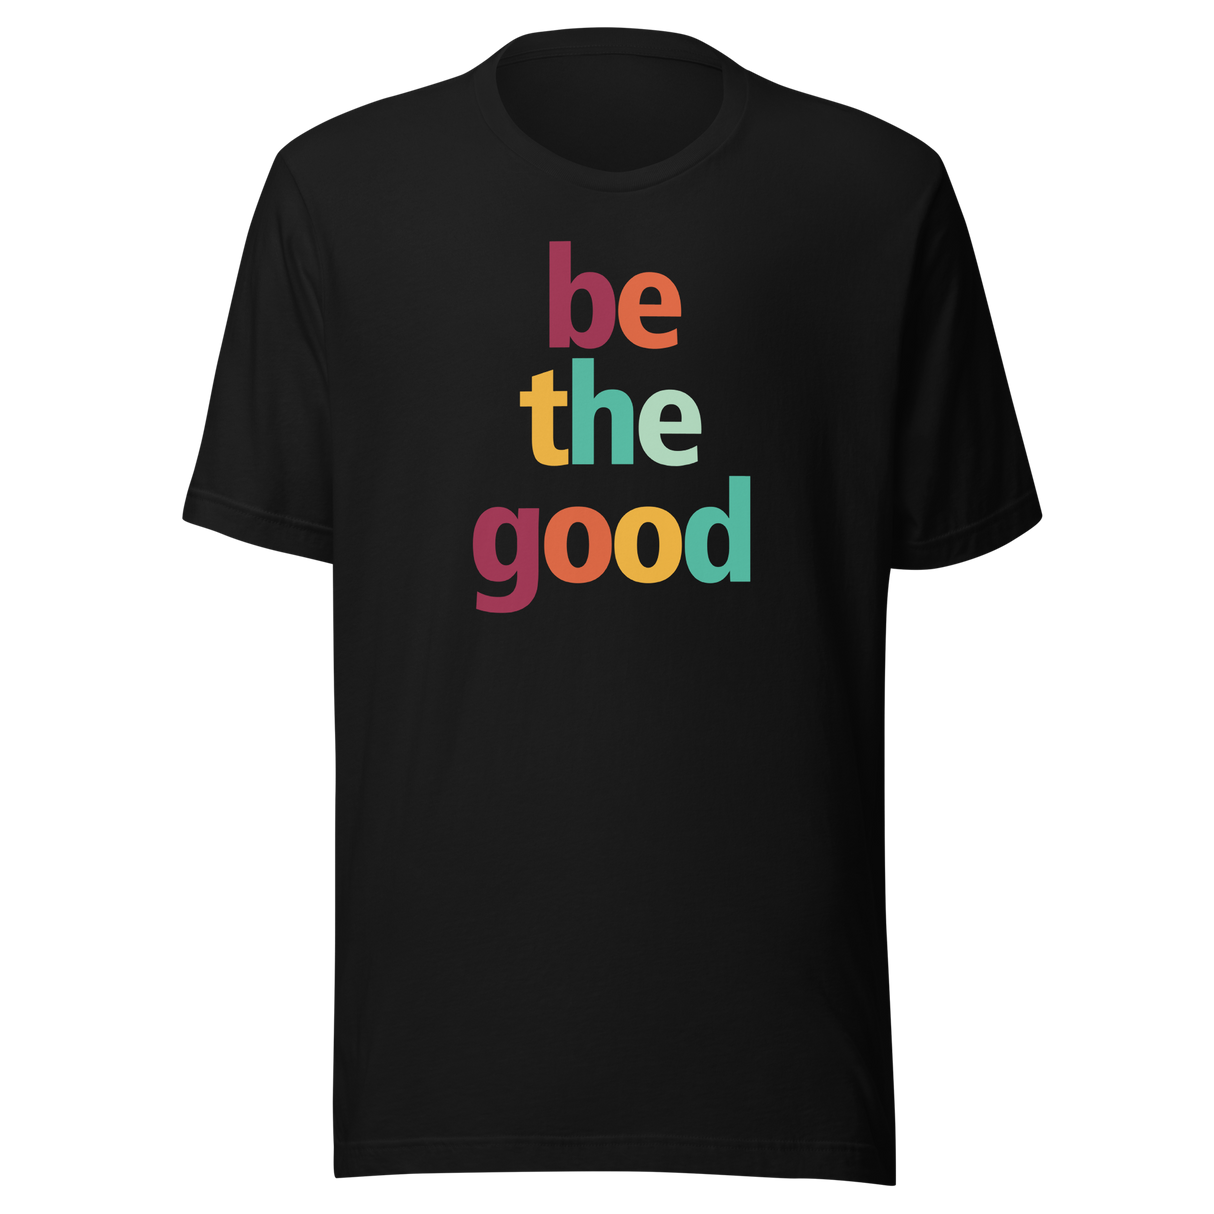 be-the-good-faith-tee-motivational-t-shirt-faith-tee-good-t-shirt-positivity-tee#color_black